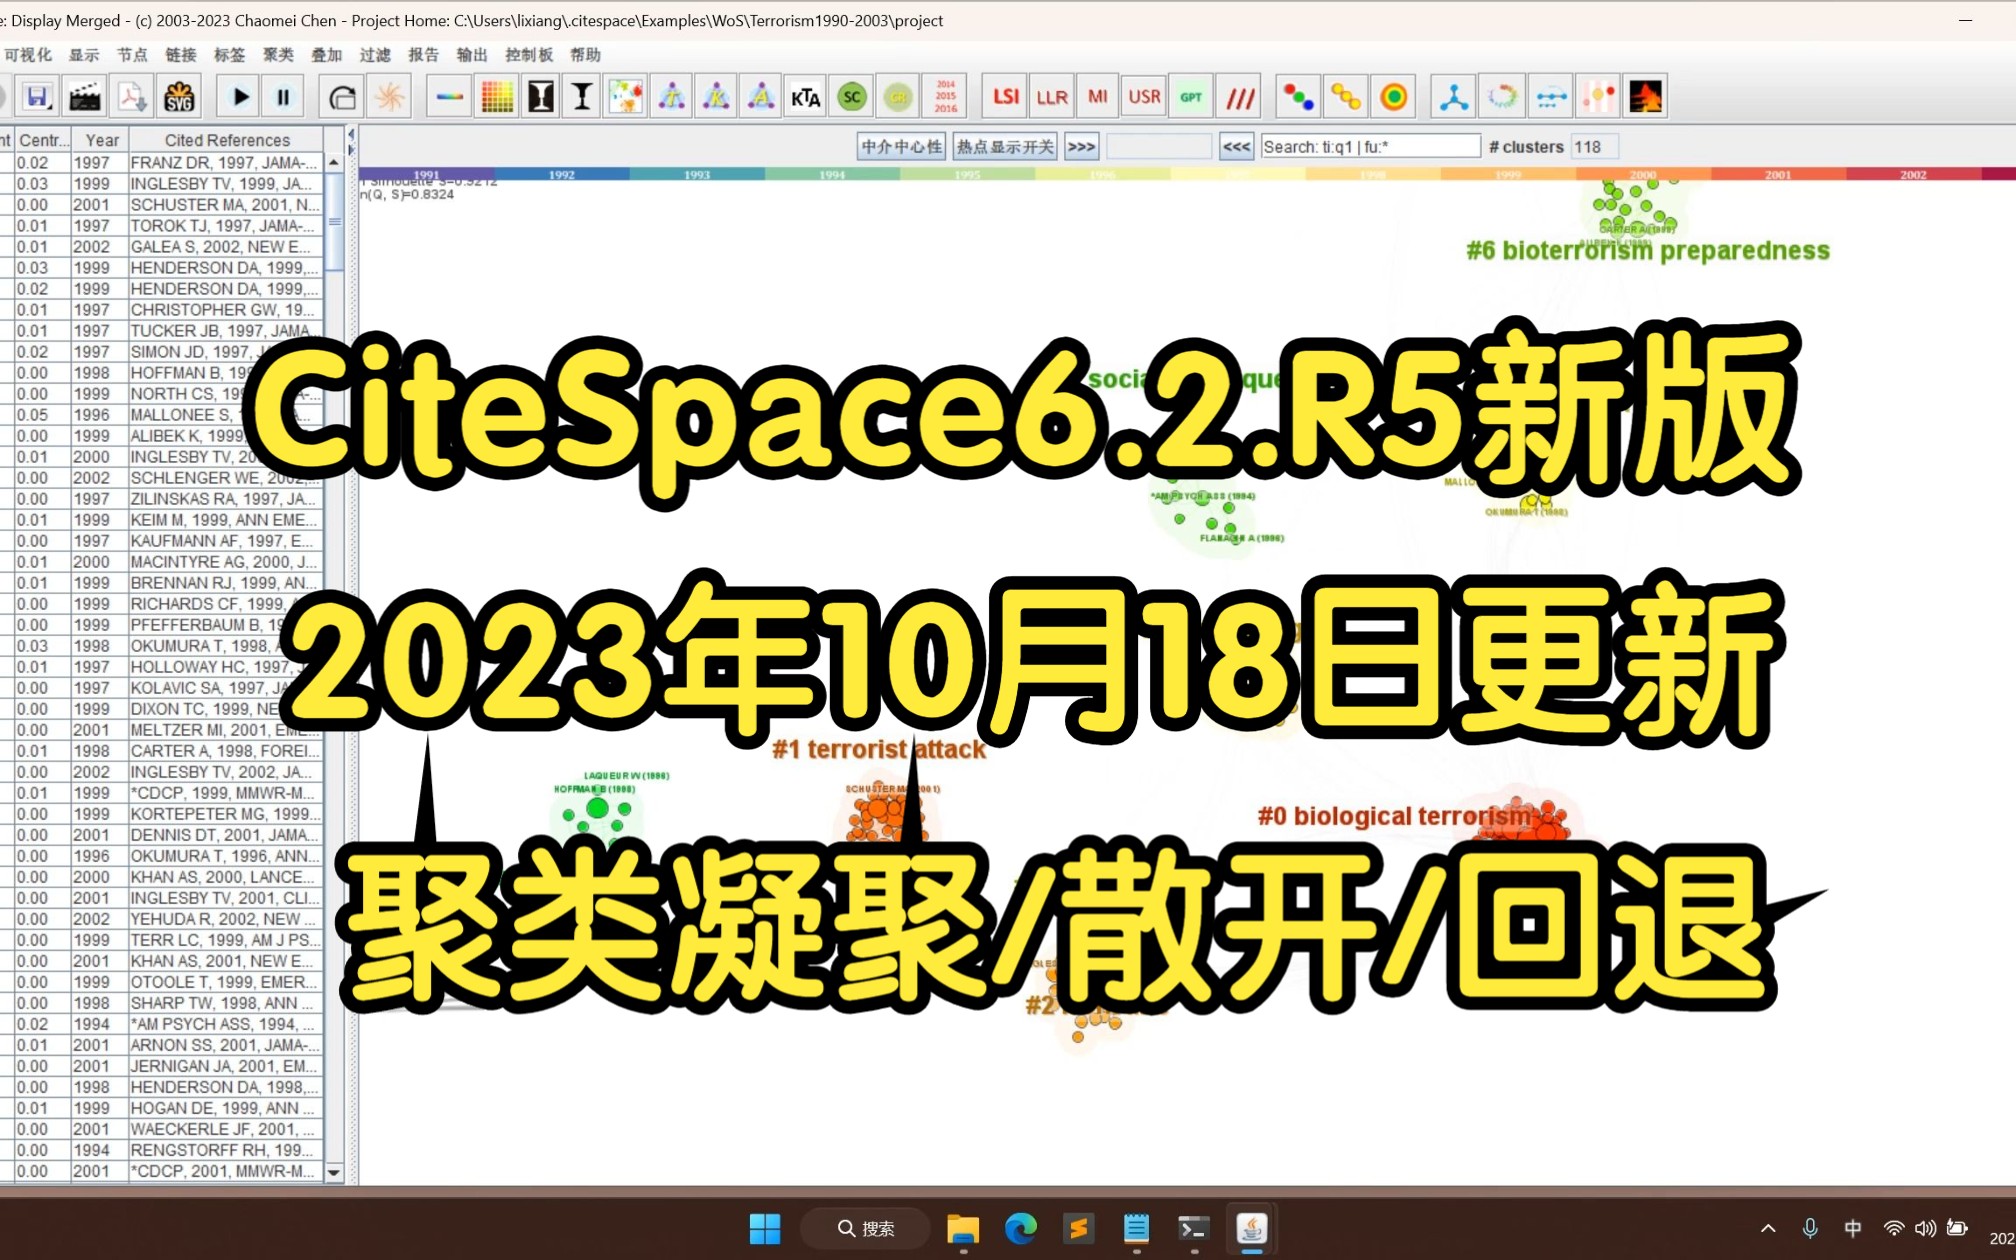 CiteSpace6.2.R5高级版新版安装更新介绍聚类凝聚/散开/操作回退功能如何使用教程